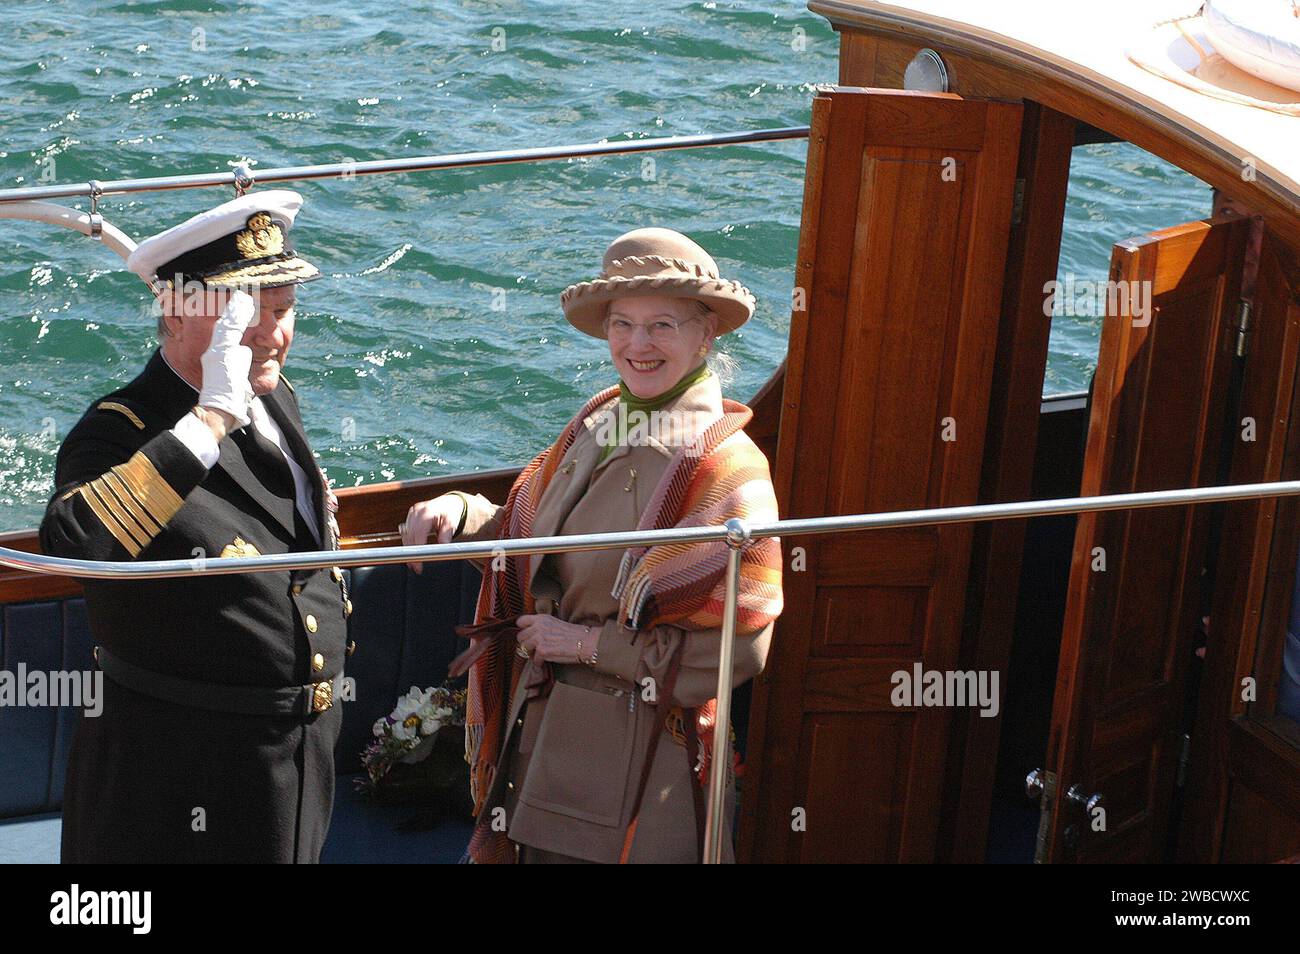 HM la Reine Margrethe II et mari prince Hnerik officiel à bord du navire Royal Danneborg comme d'habitude chaque année et couple royal navigueront de Copenhague à Hillingoer ville et déjeuner sur le navire aujourd'hui vendredi 28,2006 avril Copenhague Danemark Banque D'Images